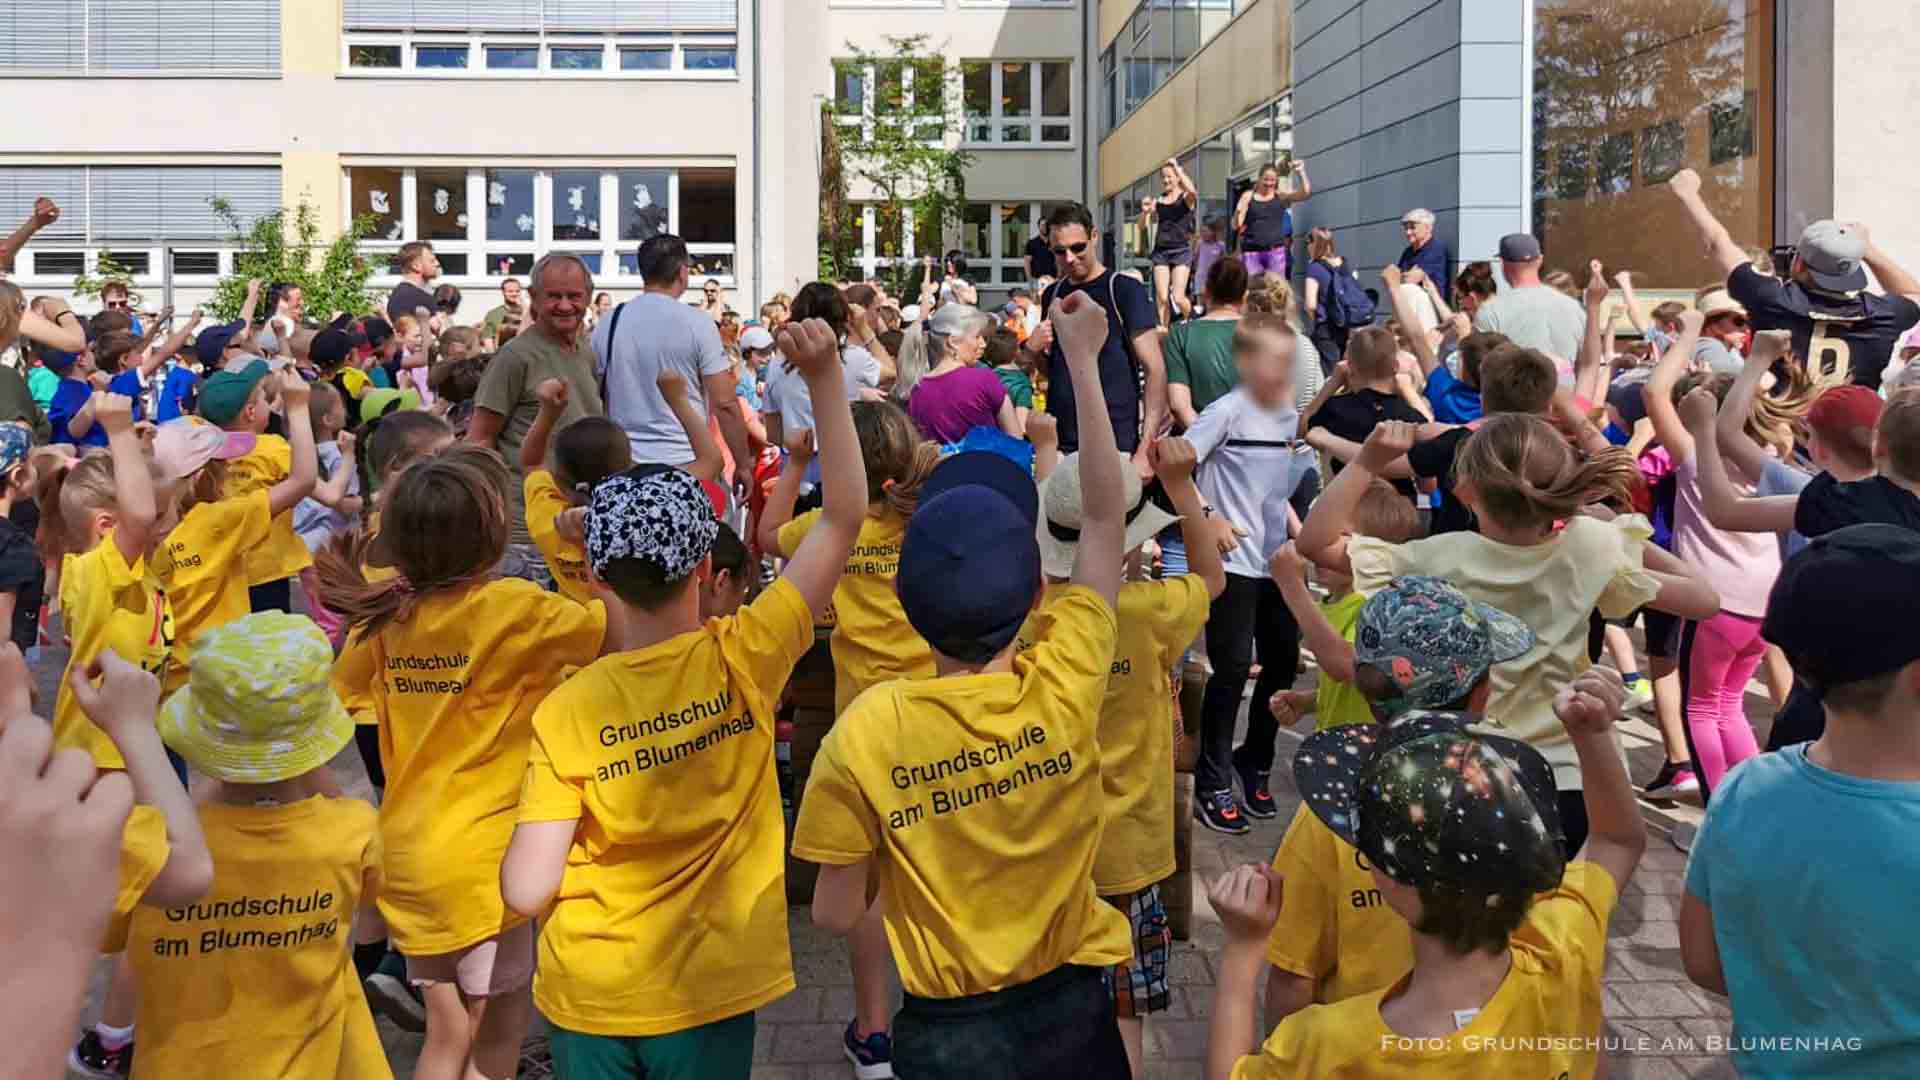 Sponsorenlauf der Grundschule am Blumenhag Bernau - Erlös 18.900 Euro!